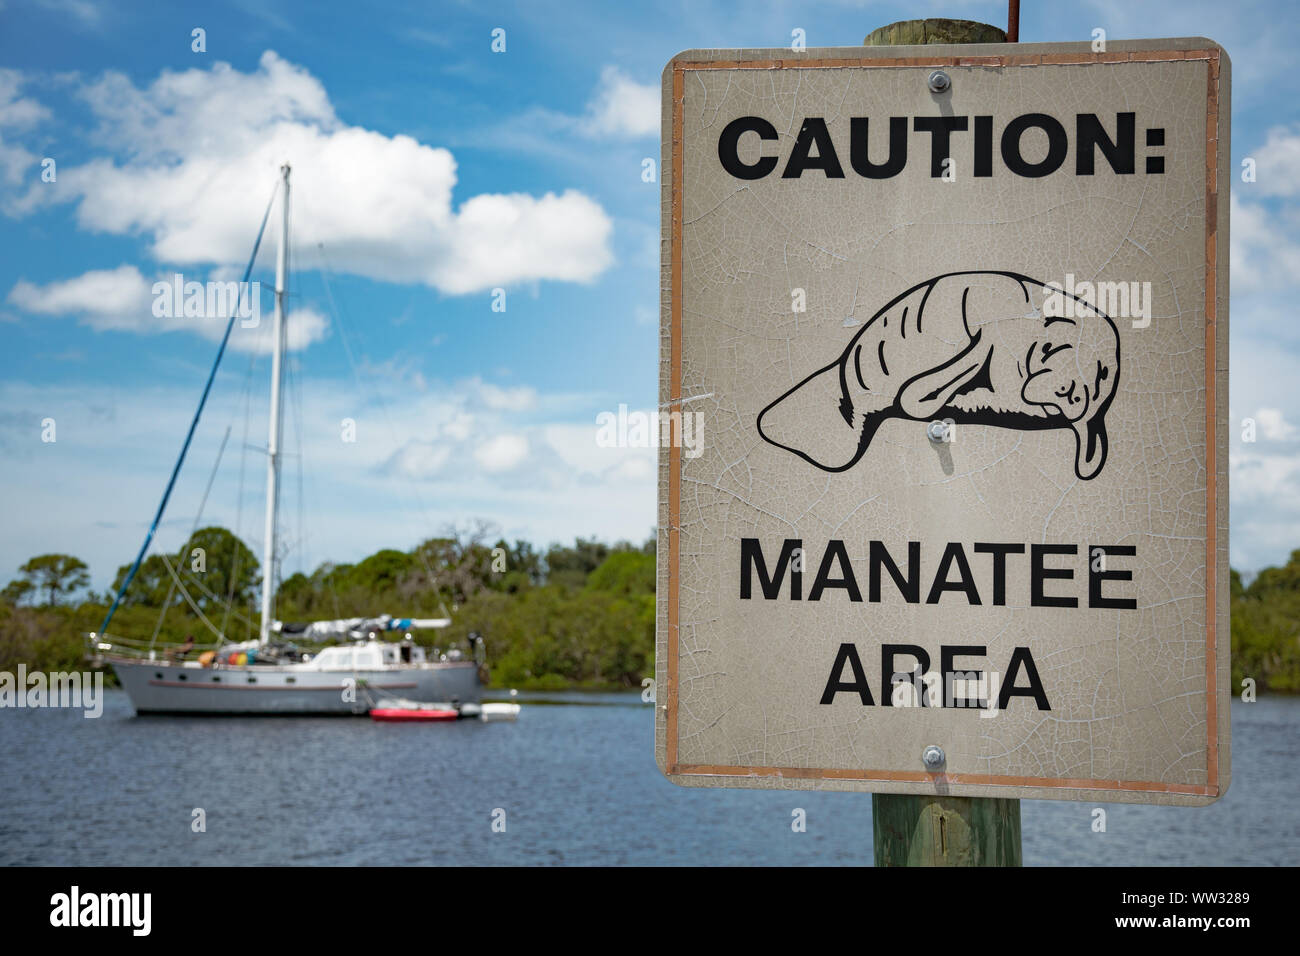 Yacht / sail boat and Manatee warning sign, Florida Stock Photo